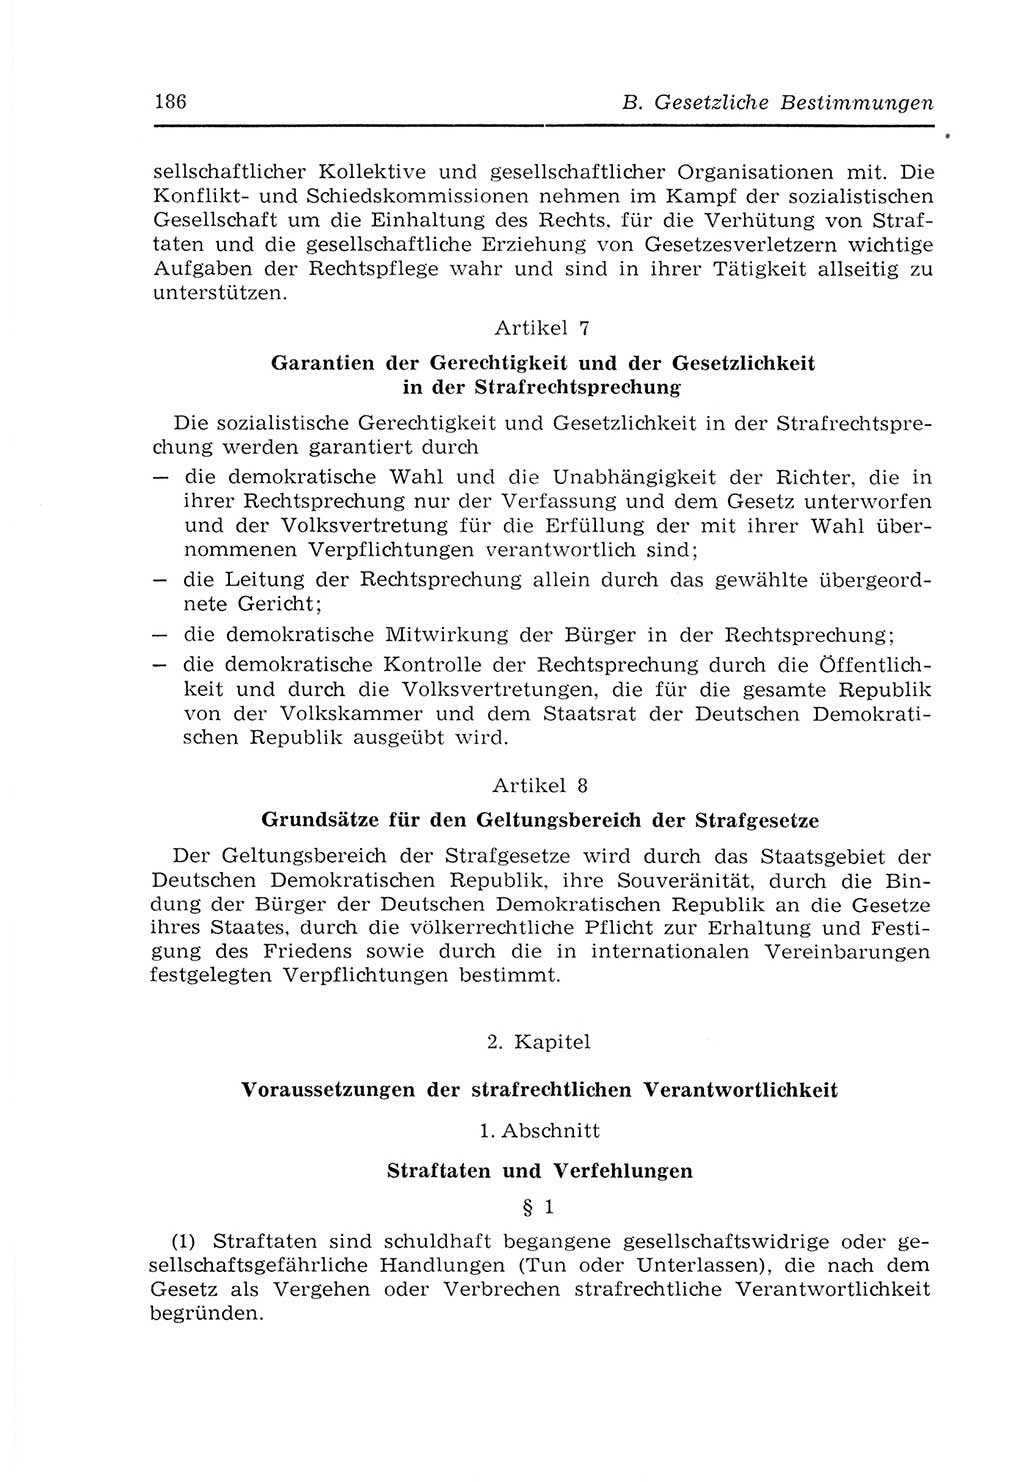 Strafvollzugs- und Wiedereingliederungsgesetz (SVWG) der Deutschen Demokratischen Republik (DDR) 1968, Seite 186 (SVWG DDR 1968, S. 186)